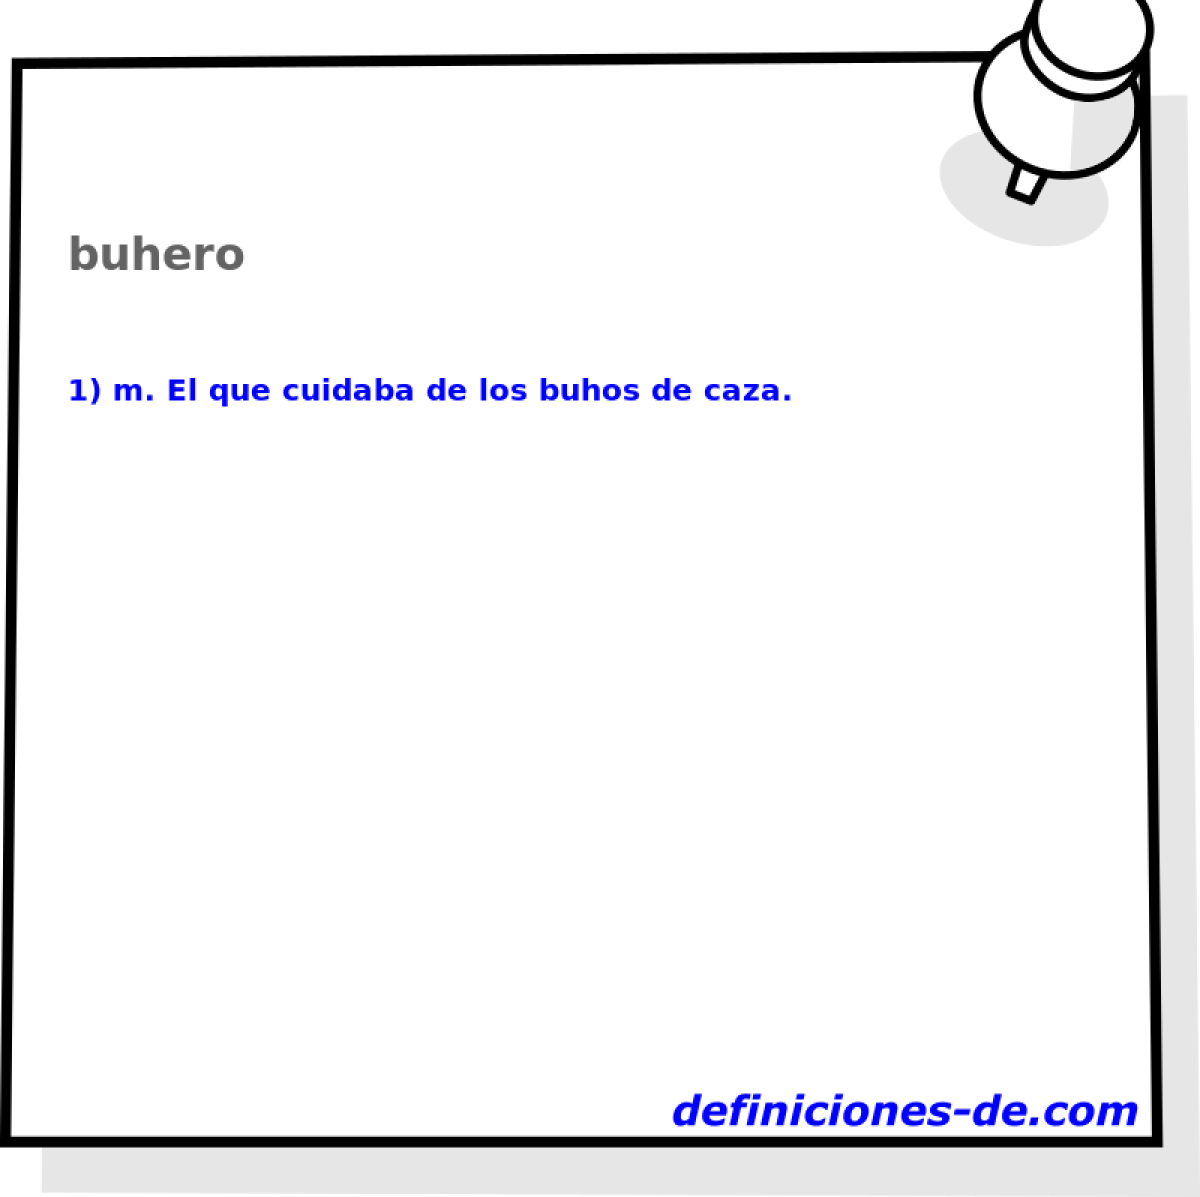 buhero 